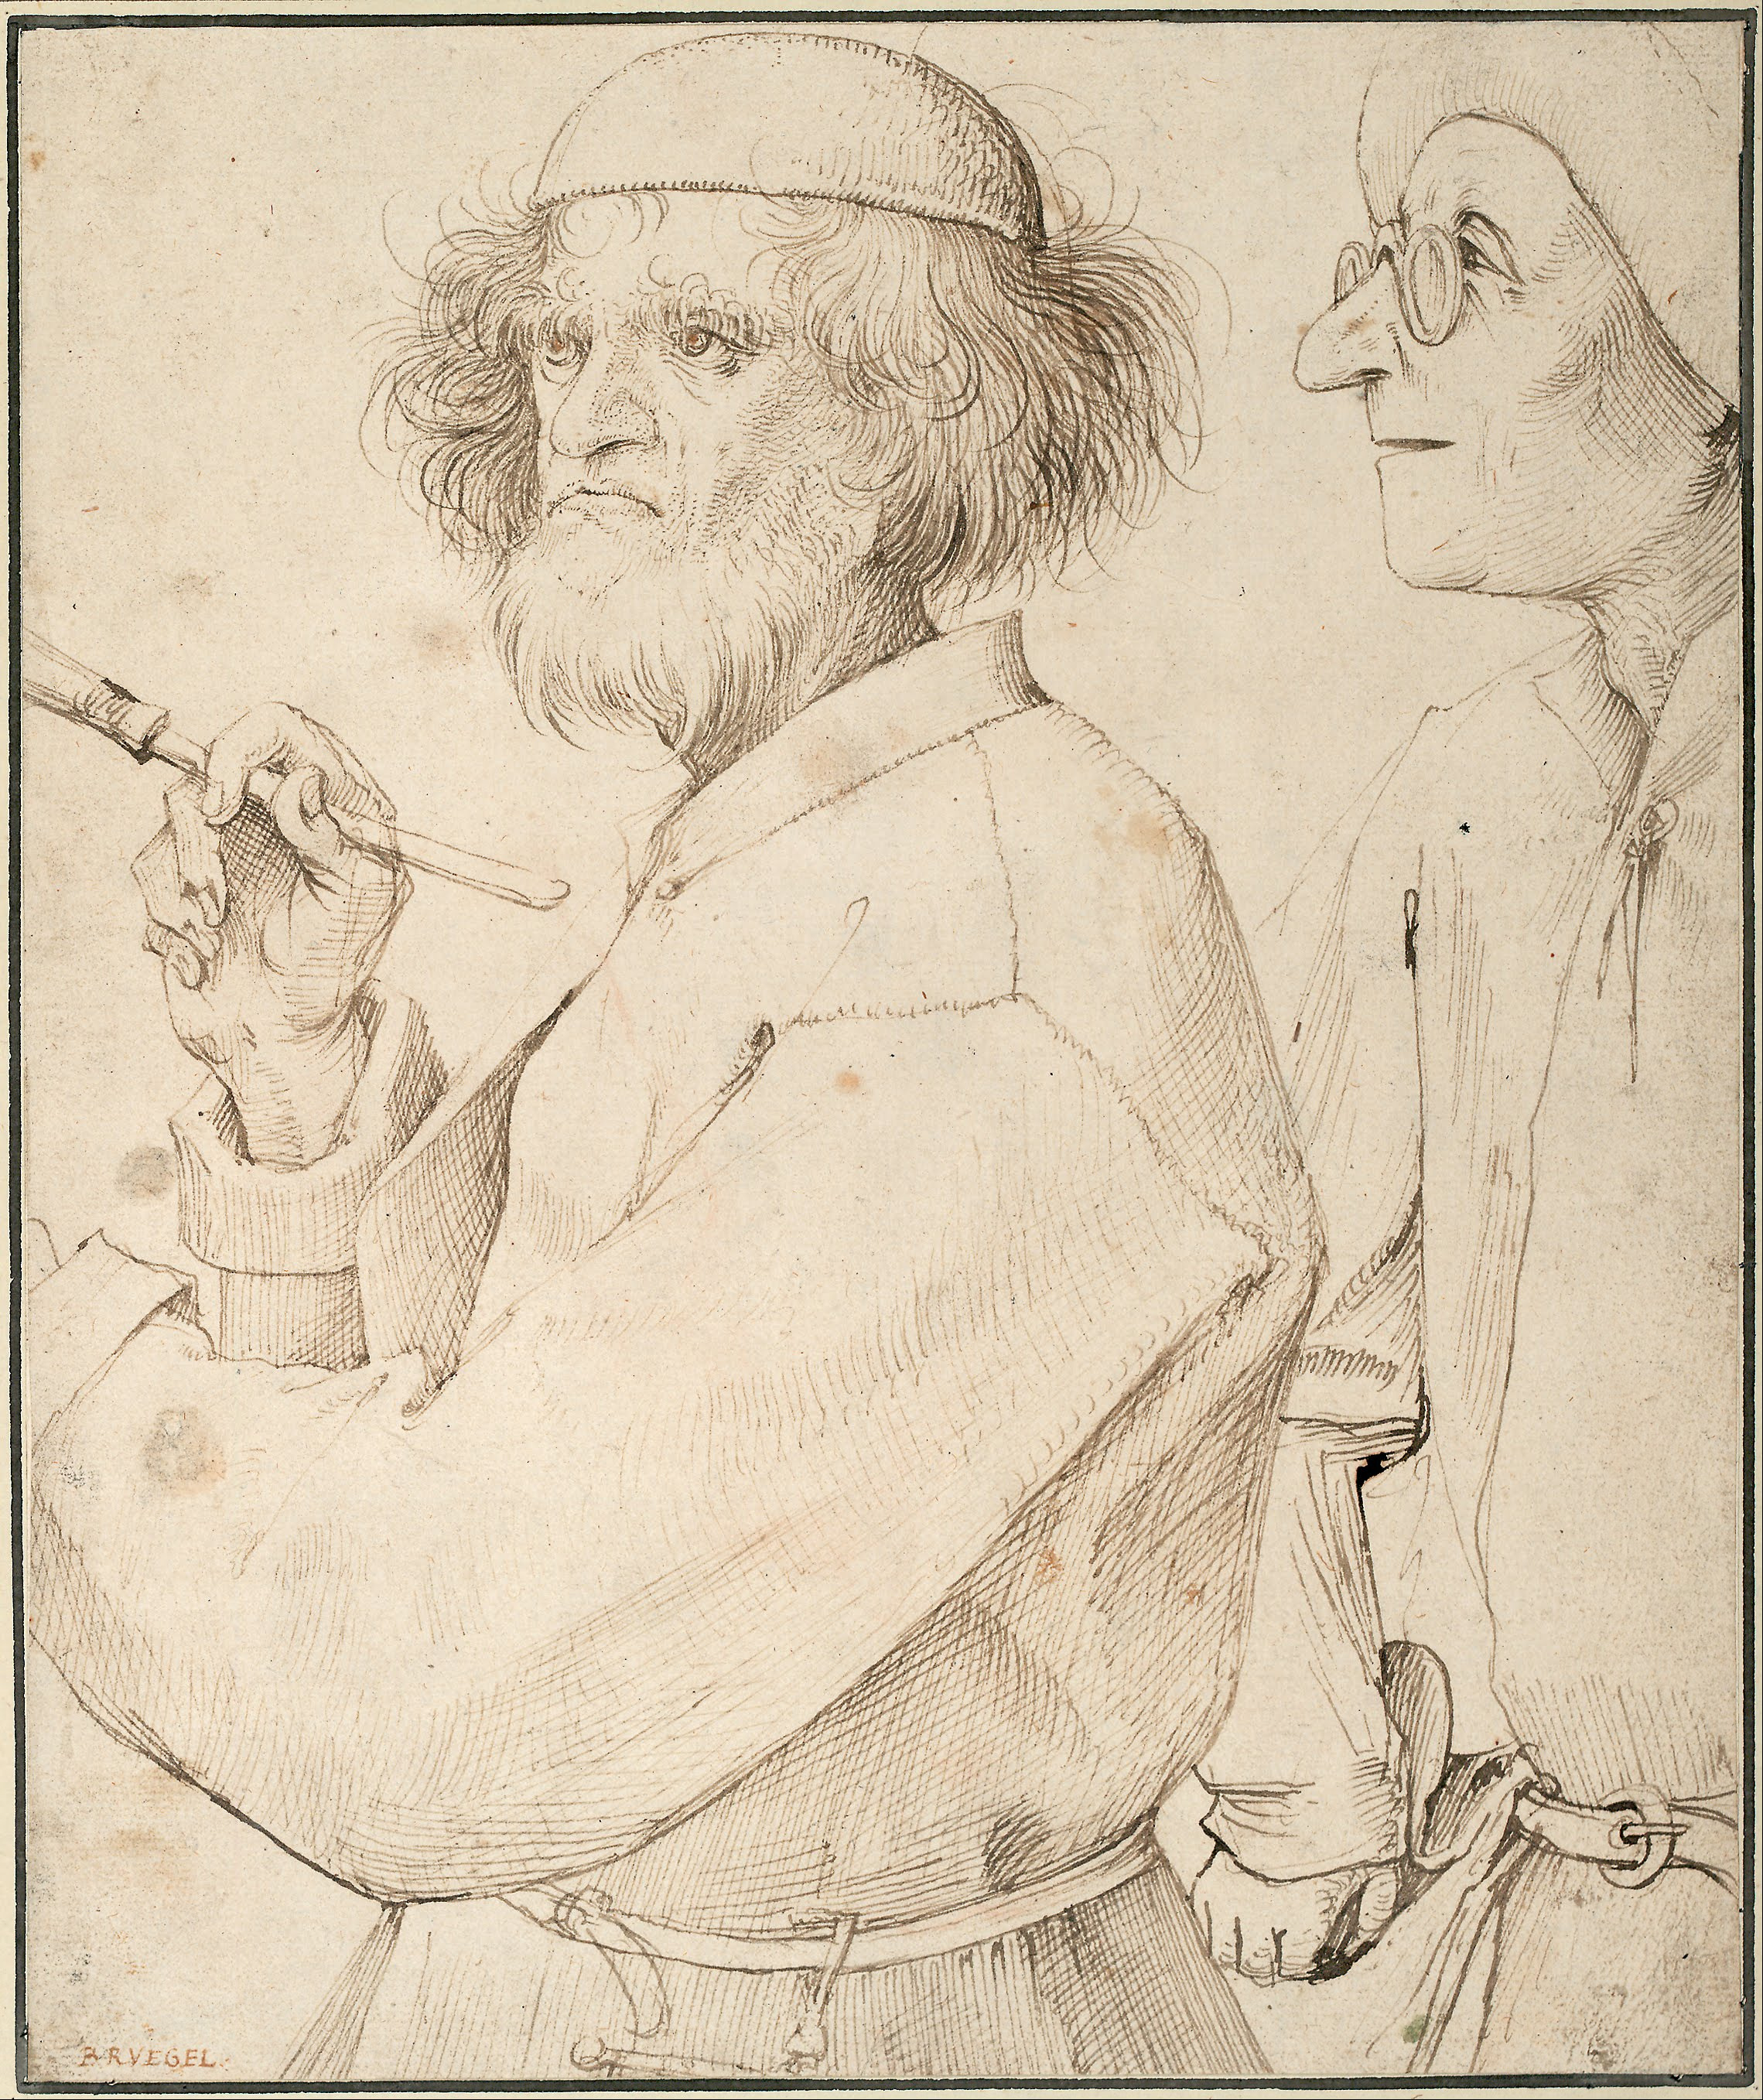 Pieter Bruegel - 'The Painter and The Connoisseur', 1565 - self portrait